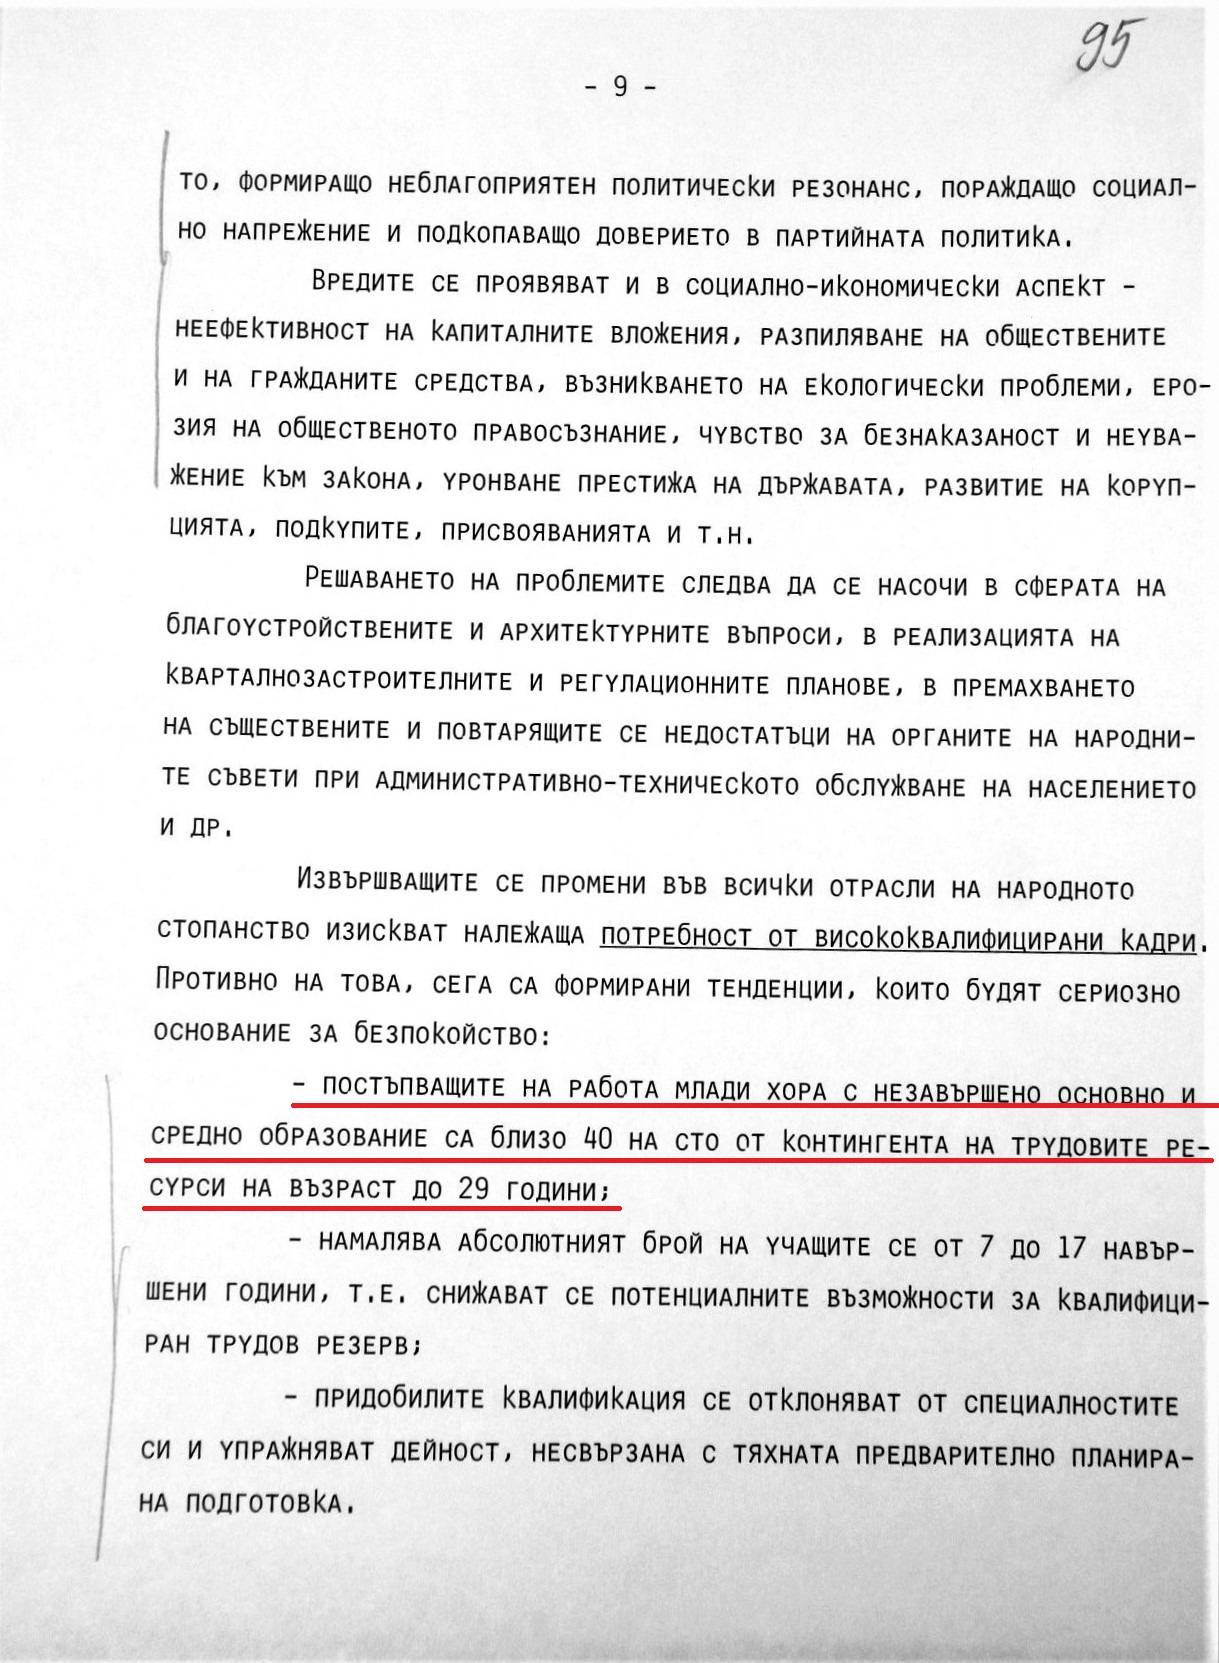 Докладът на Георги Георгиев, председател на Комитета за държавен и народен контрол (2)